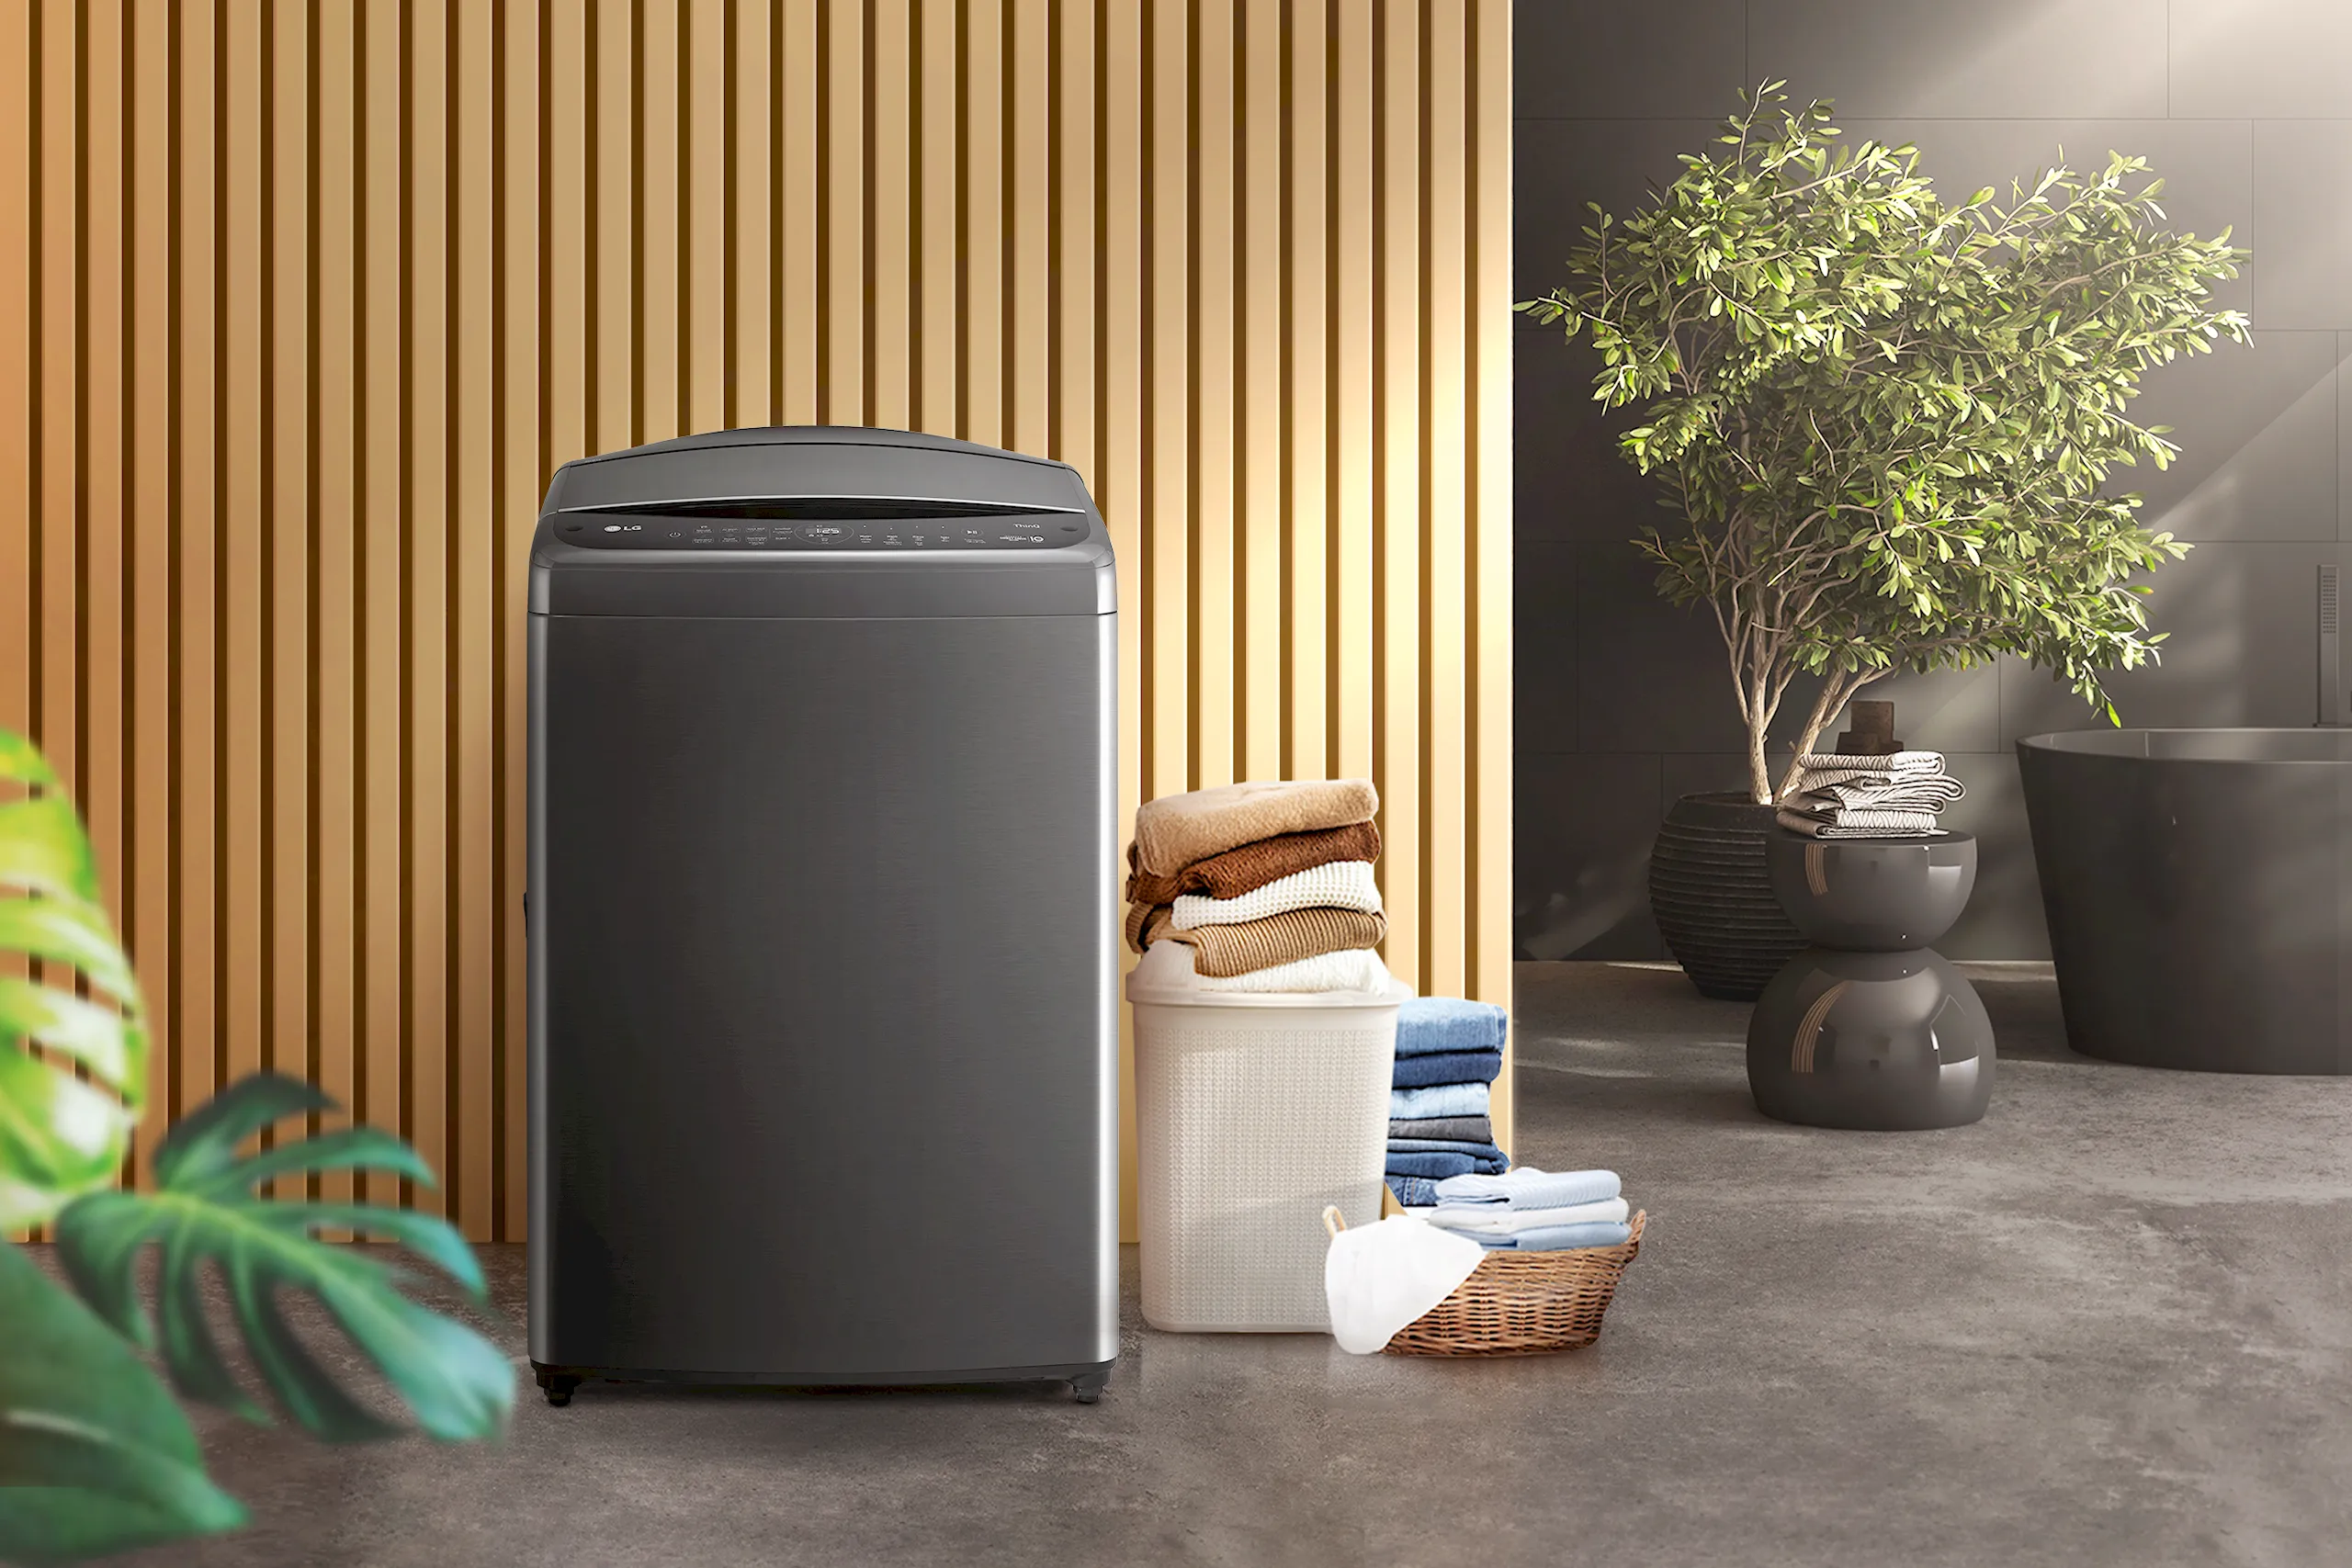 Máy giặt lồng đứng LG AI DD - Tích hợp AI đầu tiên trên thị trường, hoàn thiện giải pháp giặt sấy cho gia đình bạn